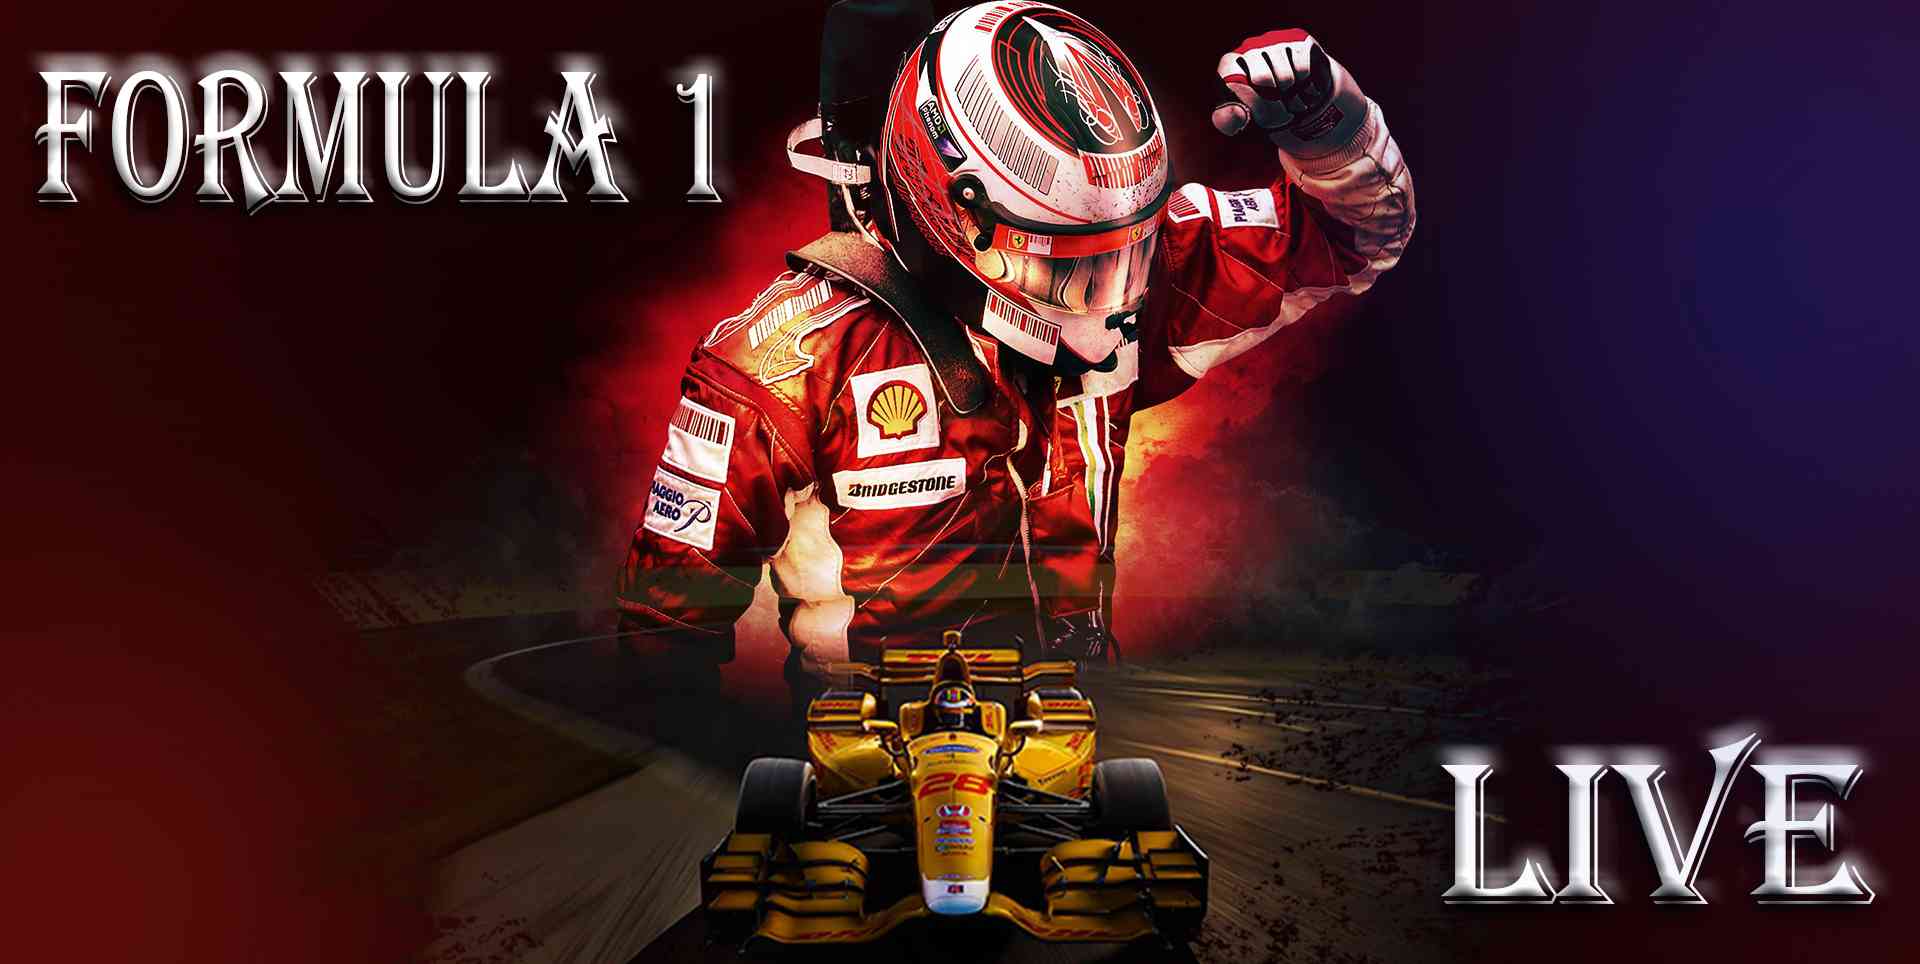 Japanese F1 Grand Prix 2012 Live Stream